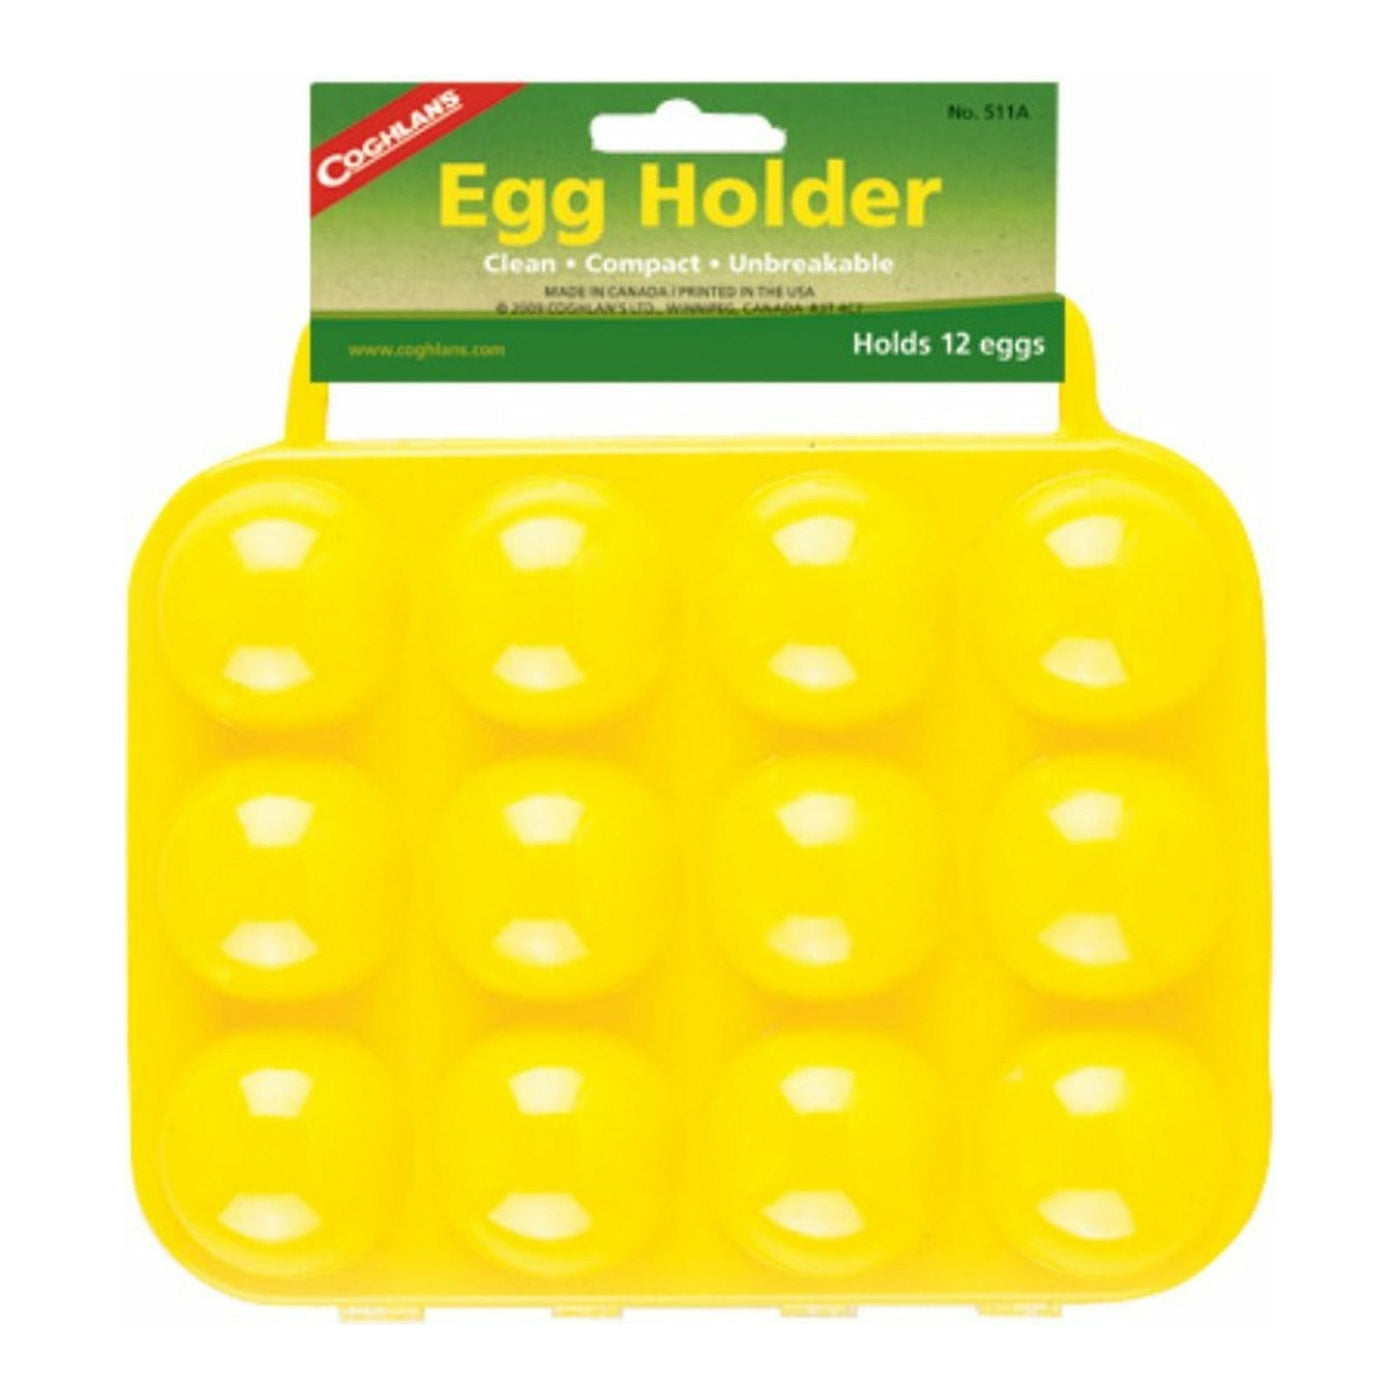 Egg Holder (12 eggs)